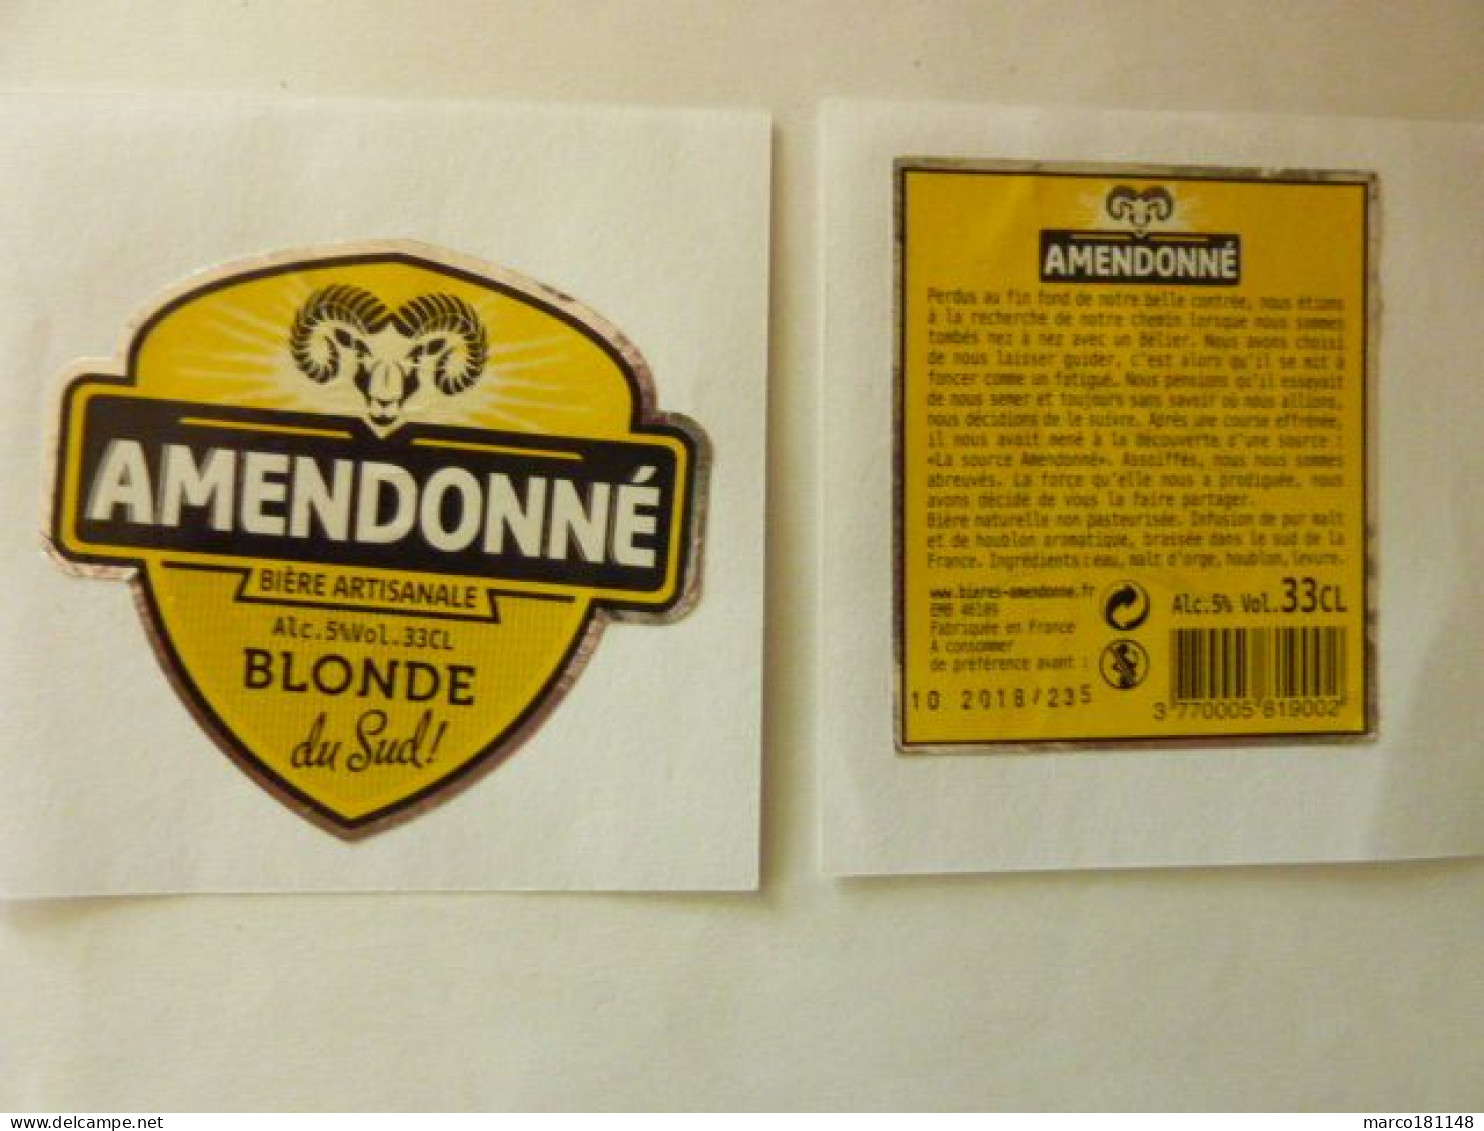 AMENDONNE - Blonde Du Sud - Bier